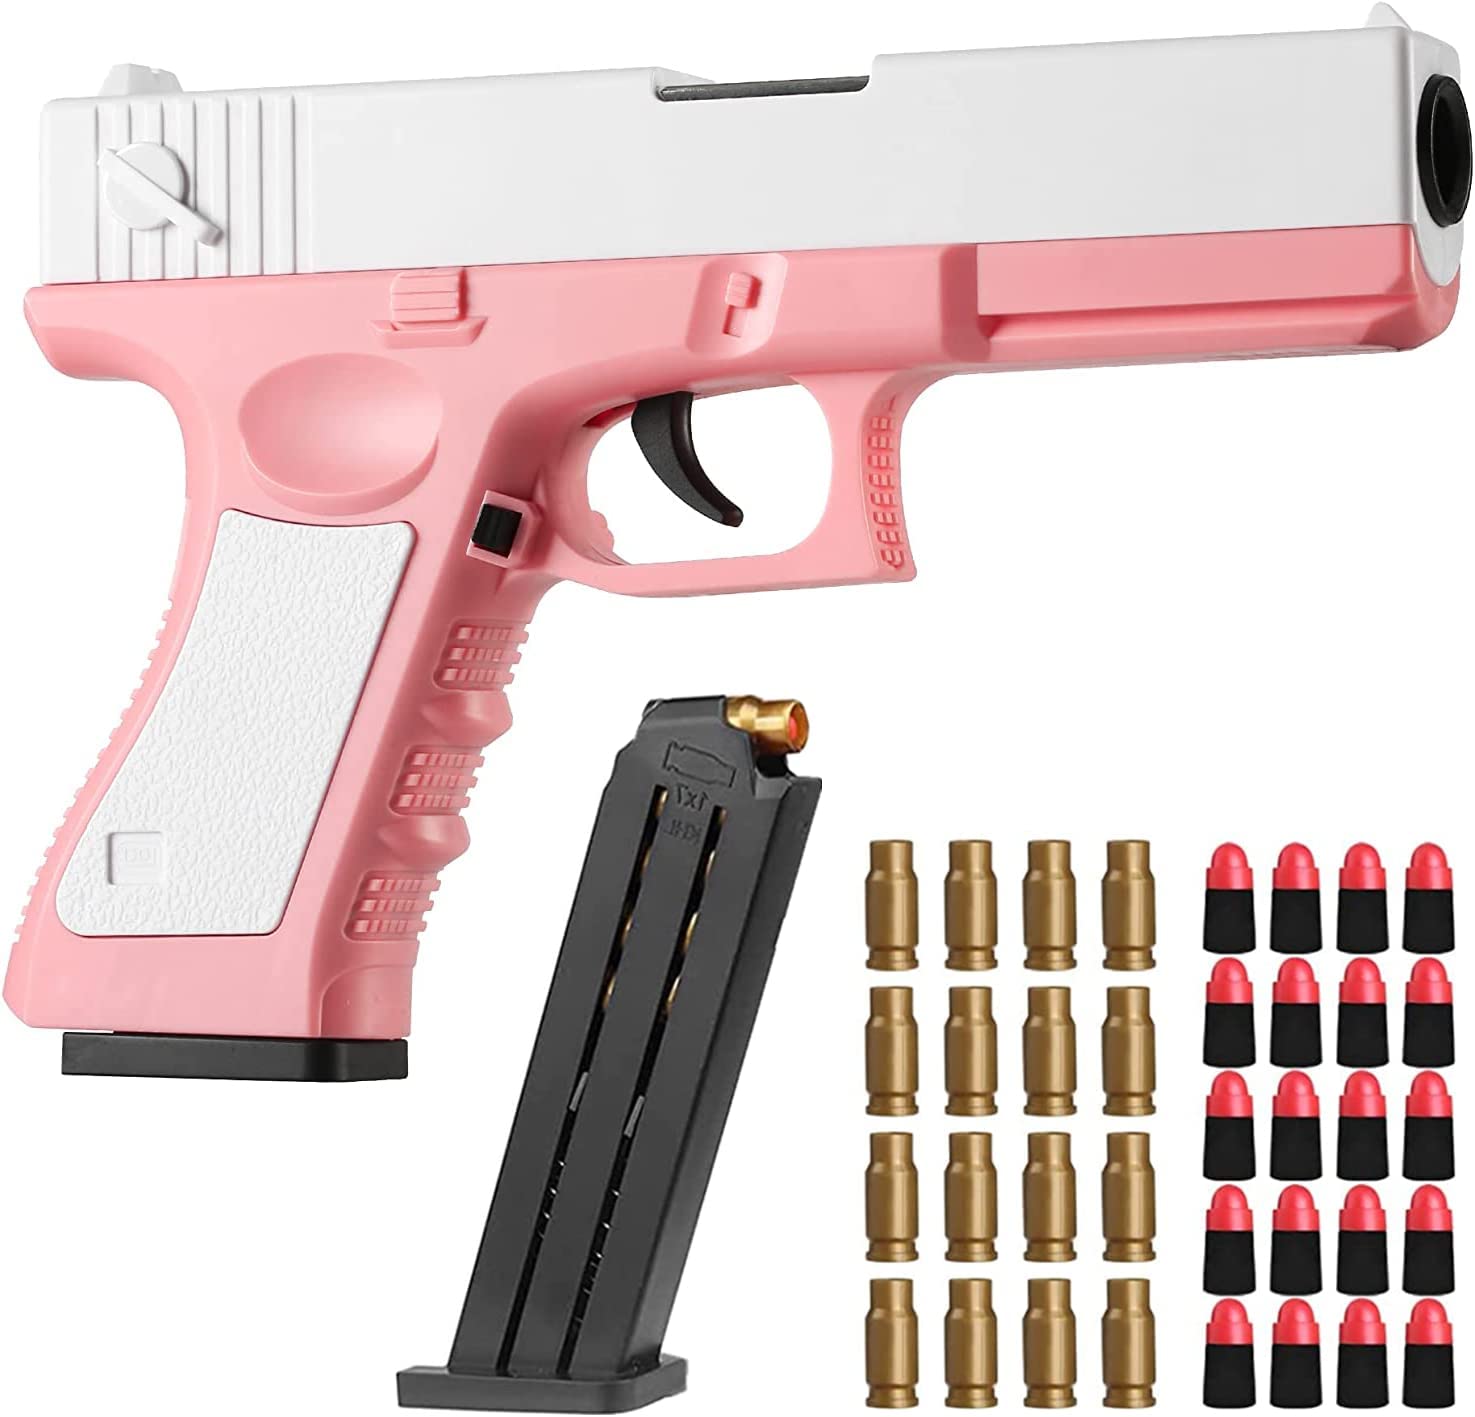 Glock & M1911 Shell Ejection Soft Bullet Toy Gun - Kūʻai i kēia lā Loaʻa iā  55% ka uku hoʻemi - MOLOOCO